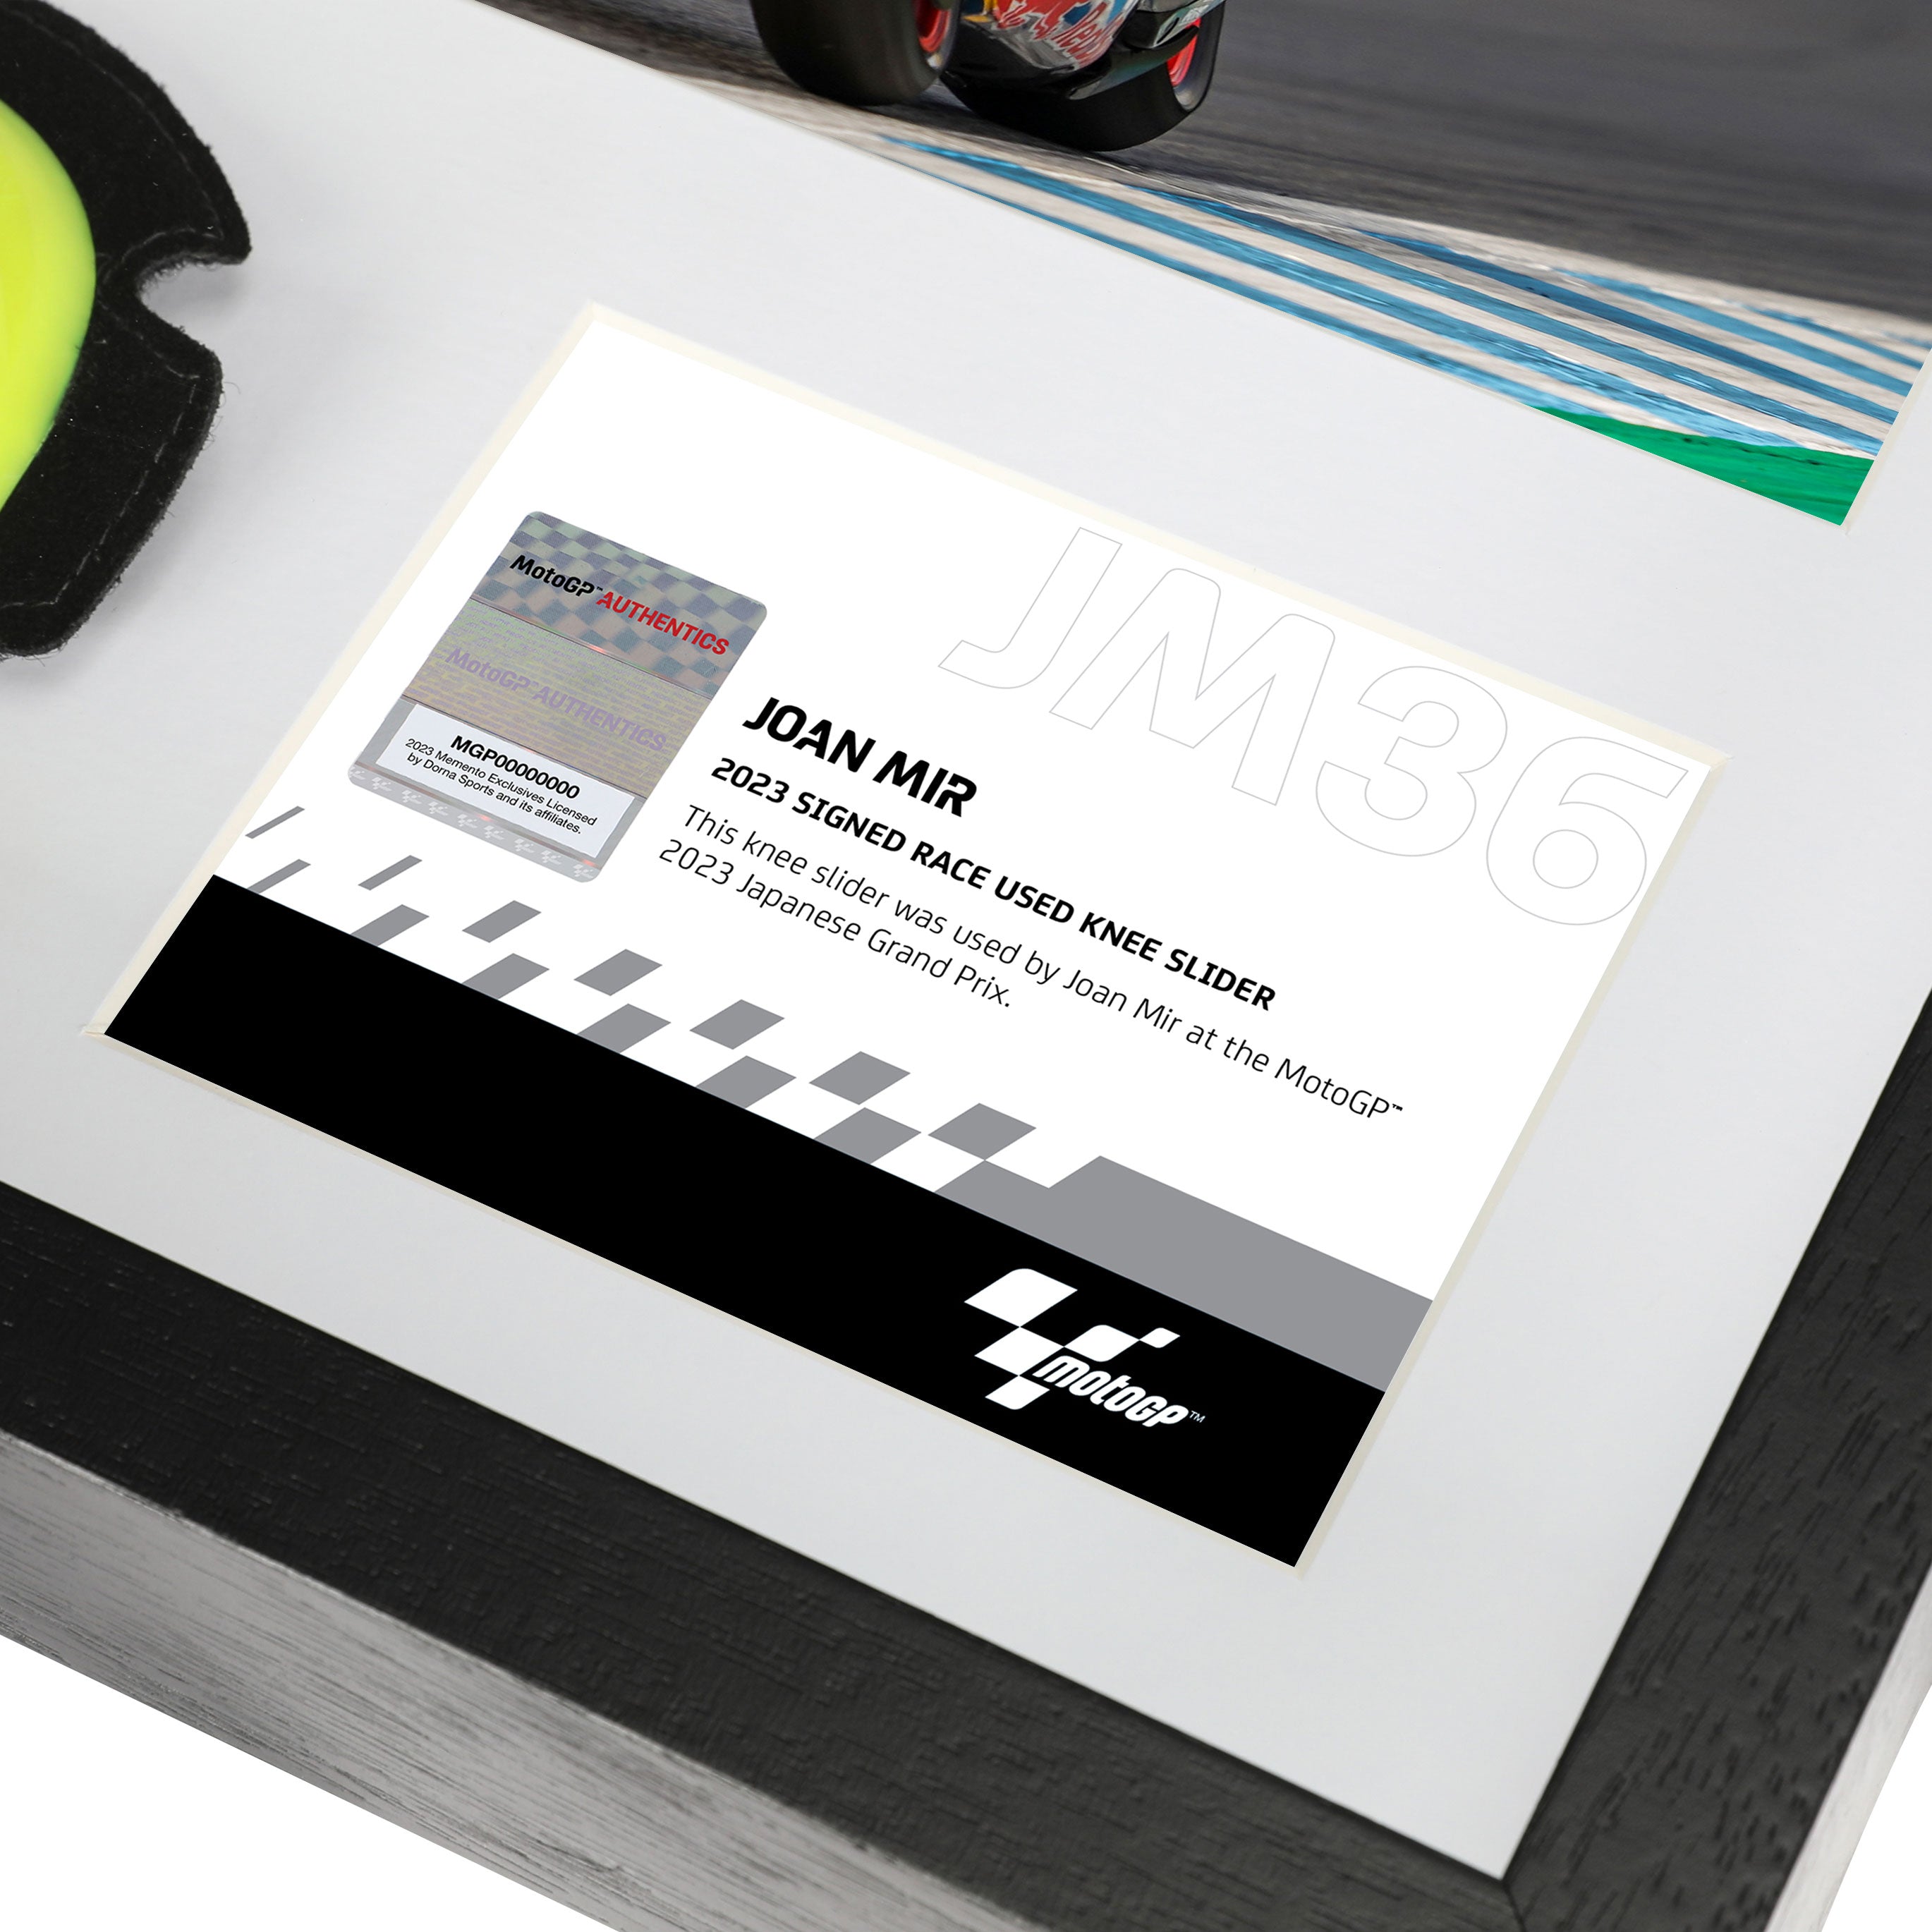 Joan Mir Signed Race-used Knee Slider – Japanese GP 2023